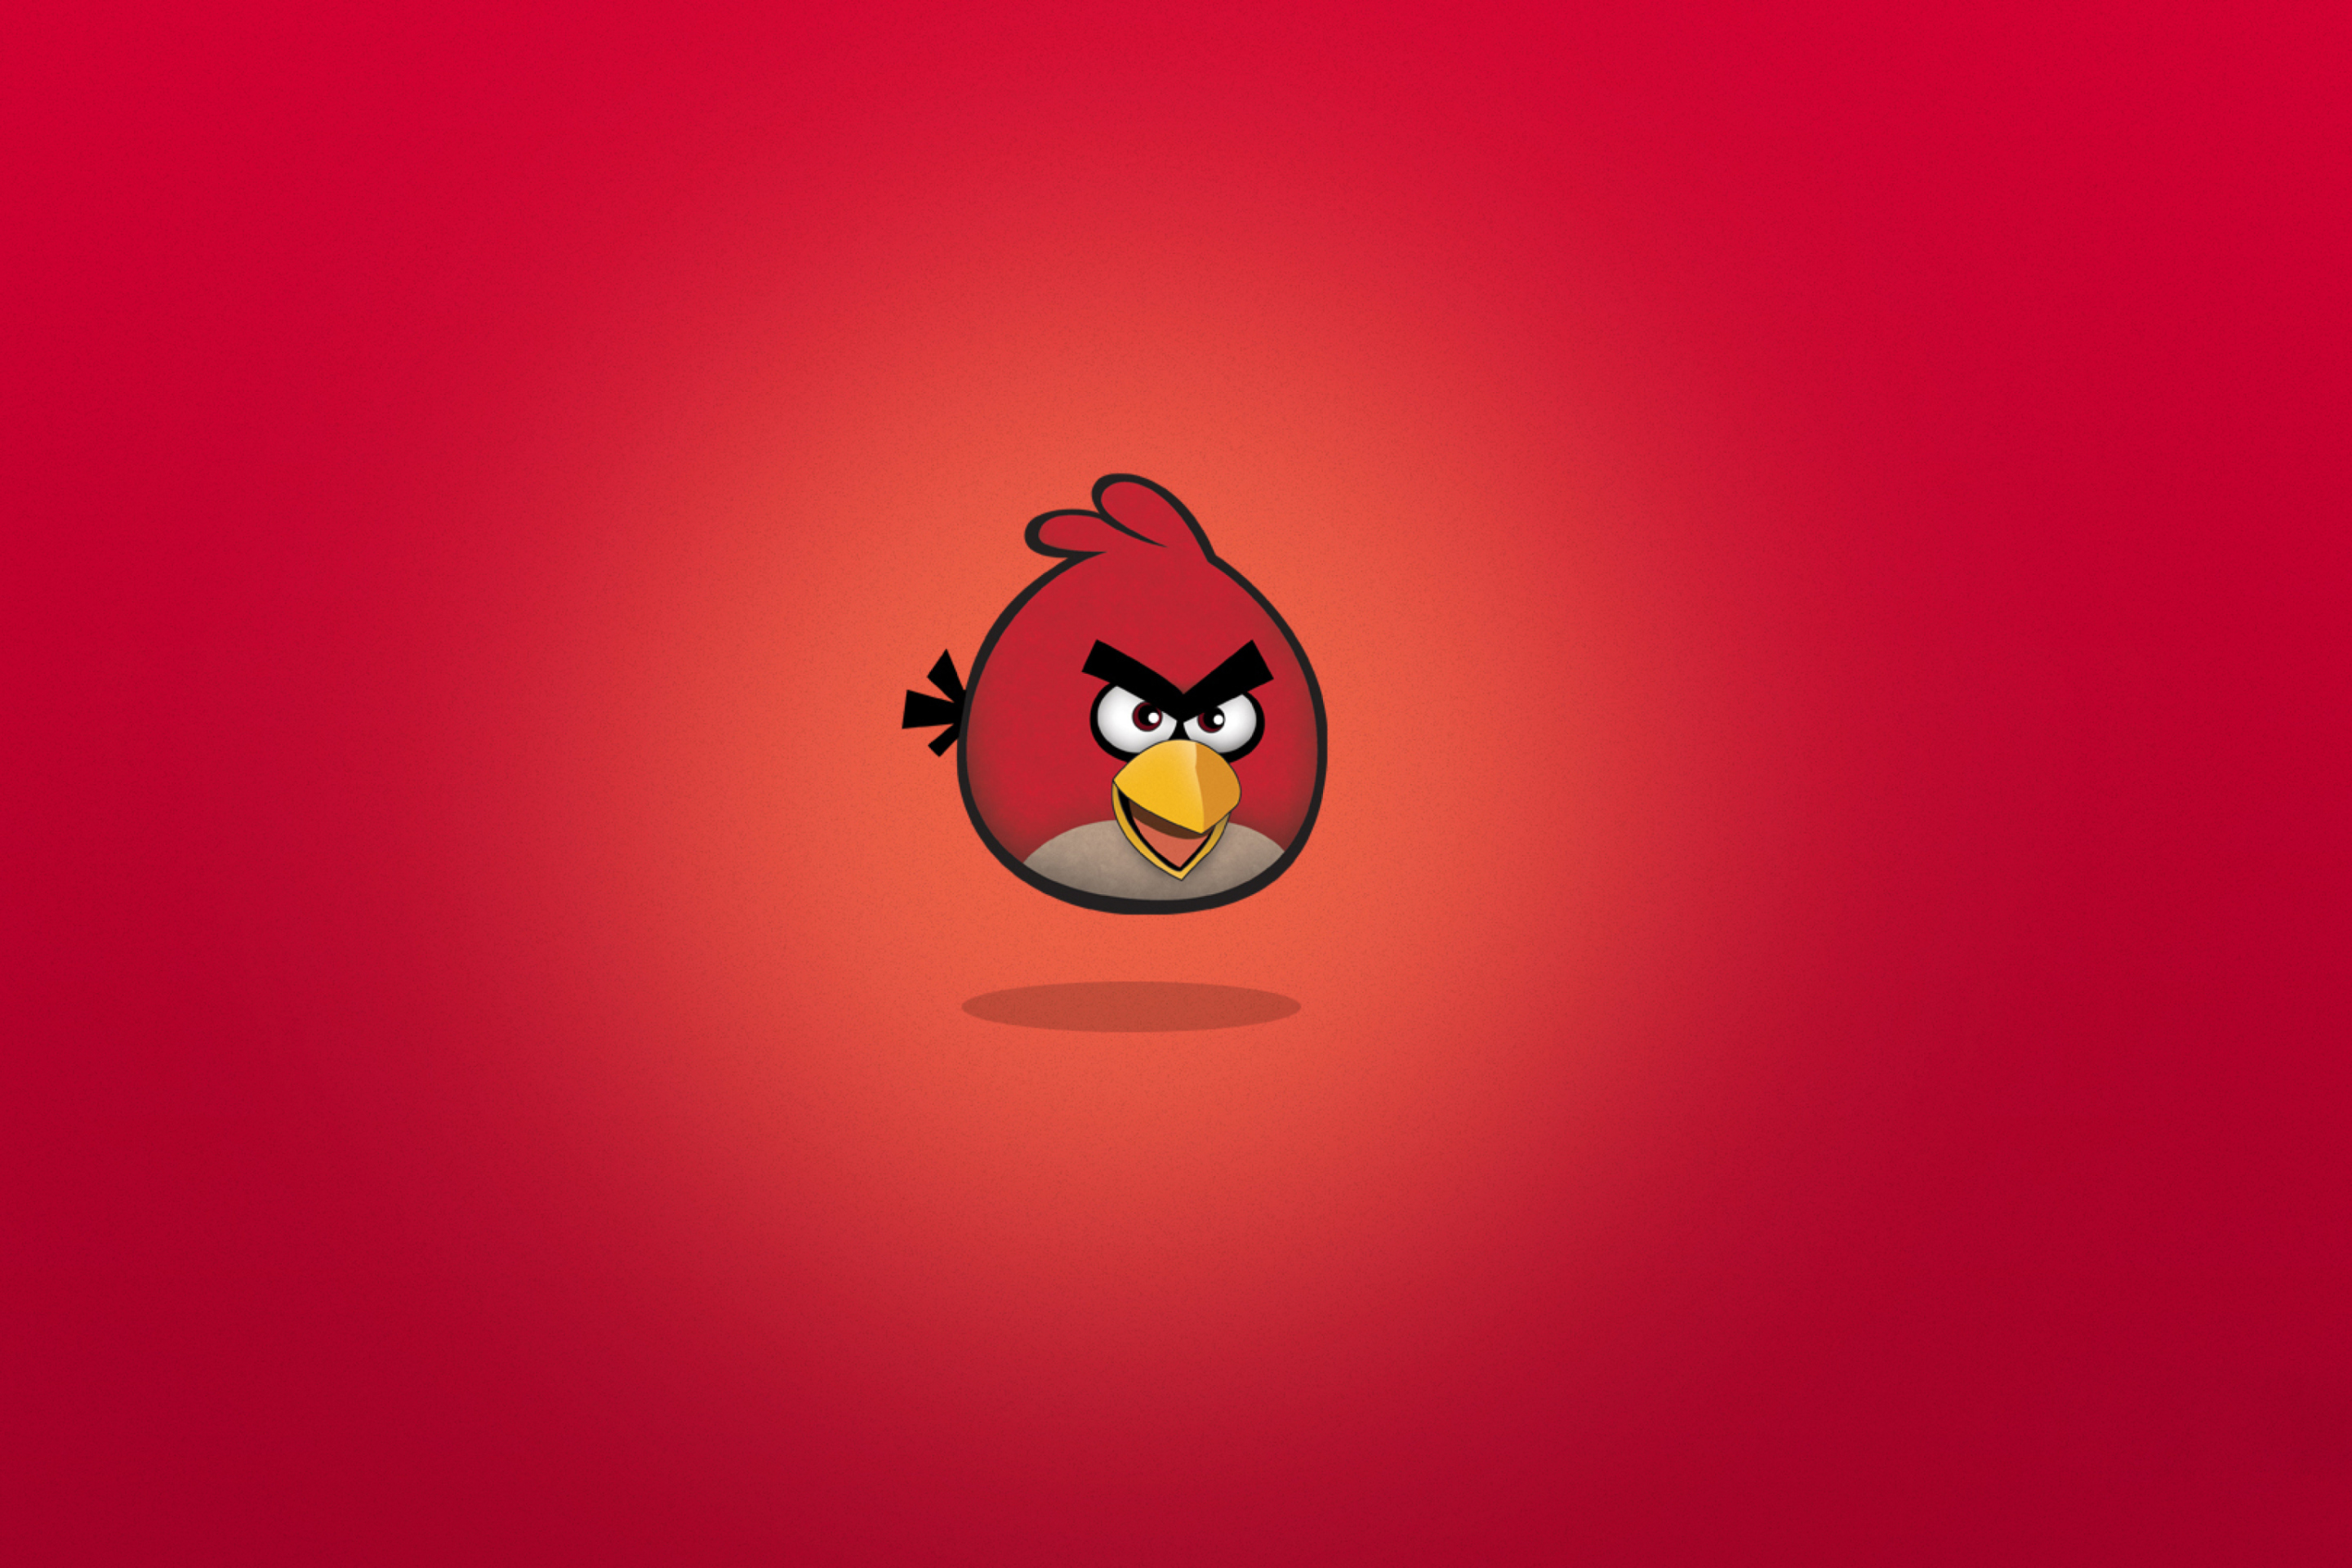 Обои Angry Birds Red 2880x1920